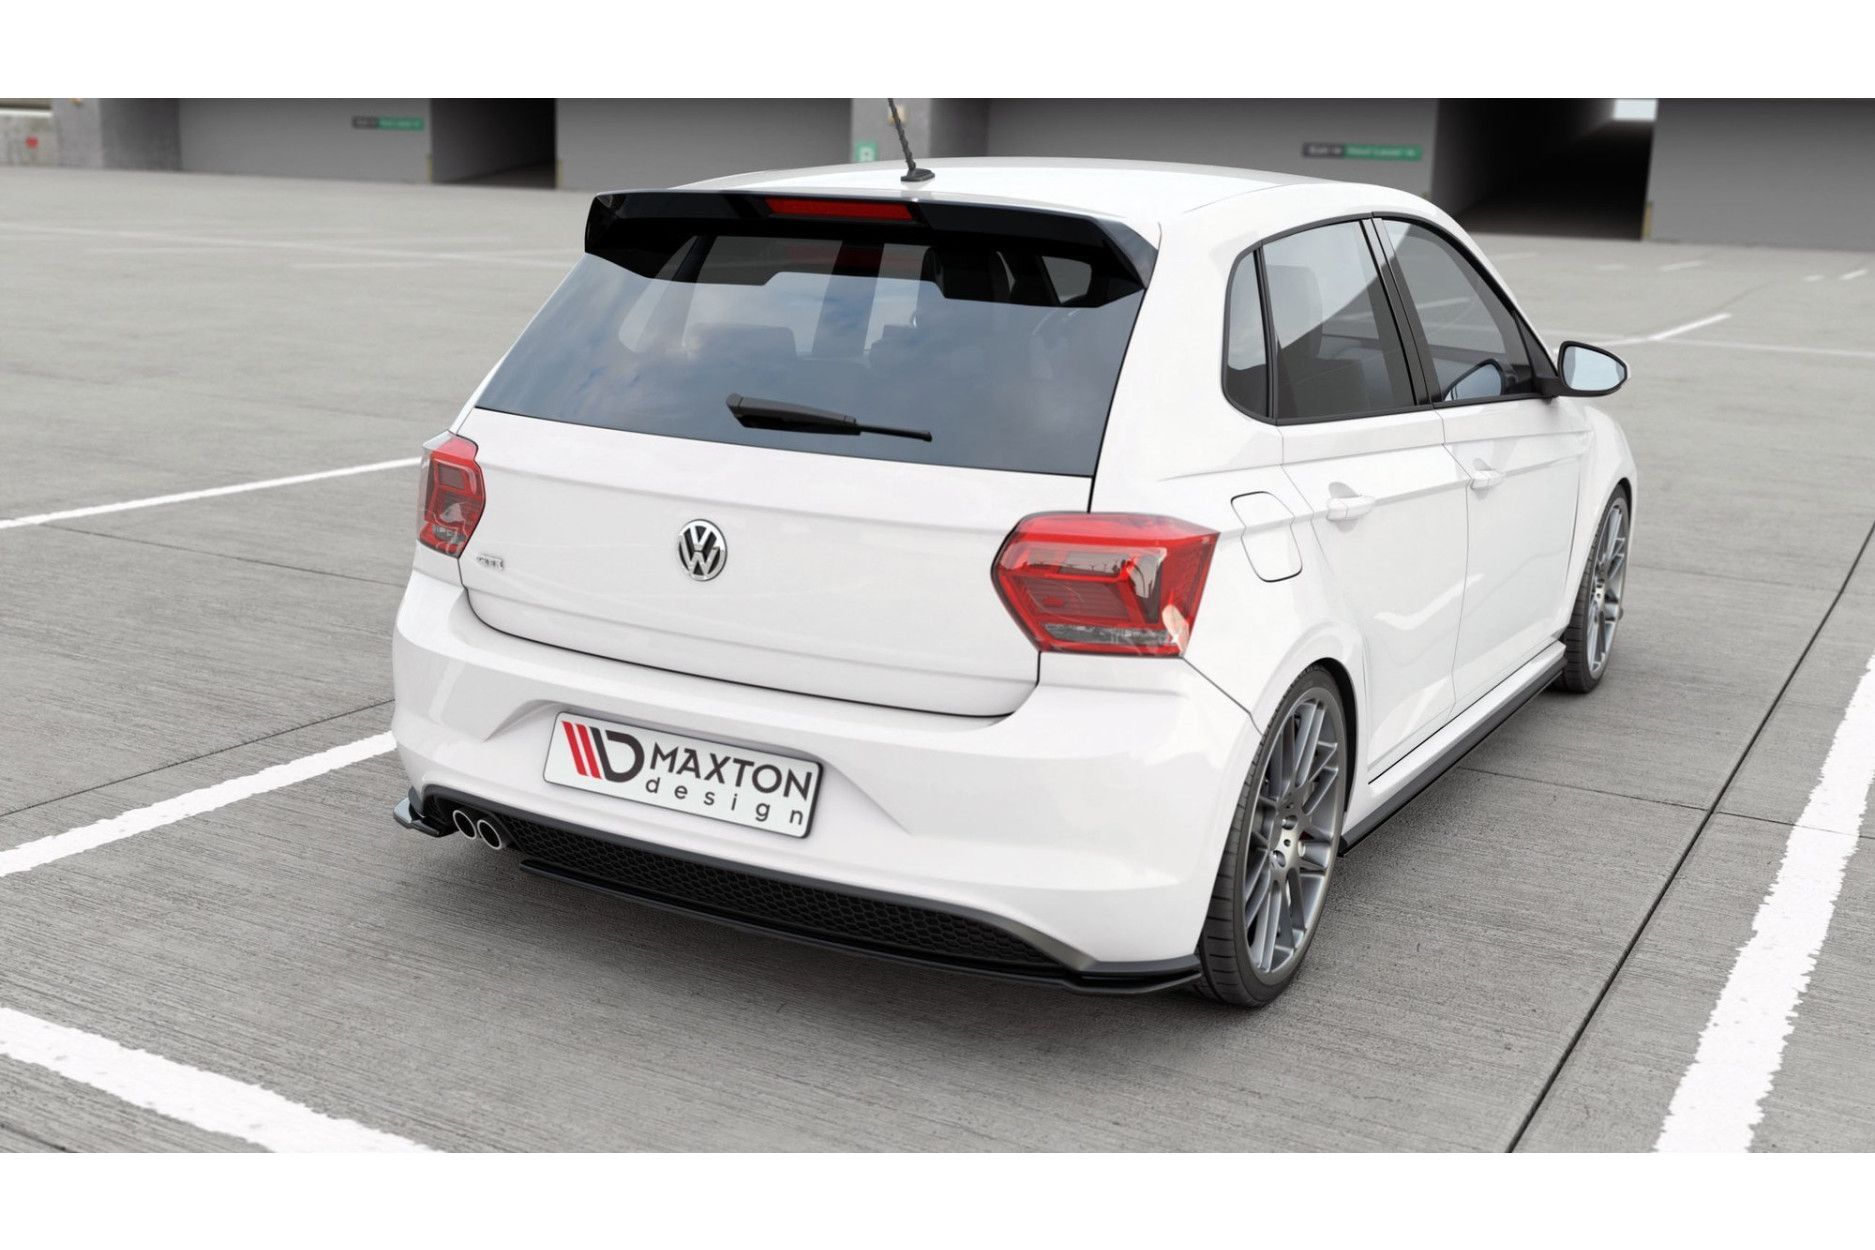 Maxtondesign Diffusor V.2 für Volkswagen Polo MK6 GTI schwarz strukturiert  - online kaufen bei CFD